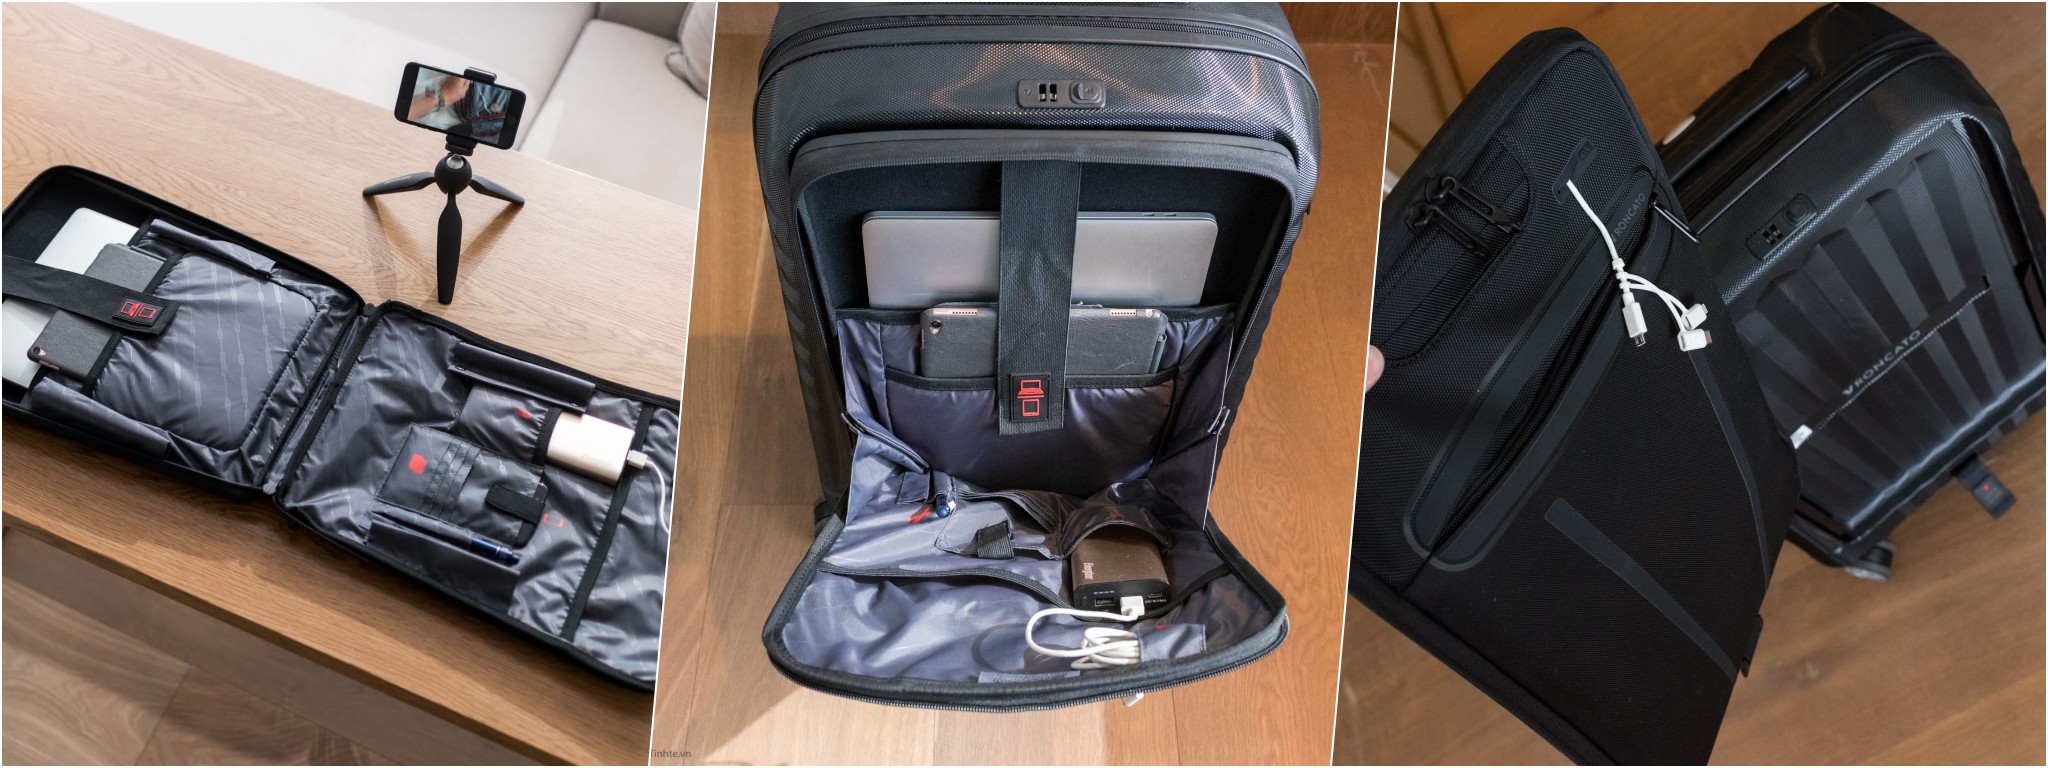 Trên tay vali kéo Roncato: ngăn đựng laptop tháo rời được, Made in Italy